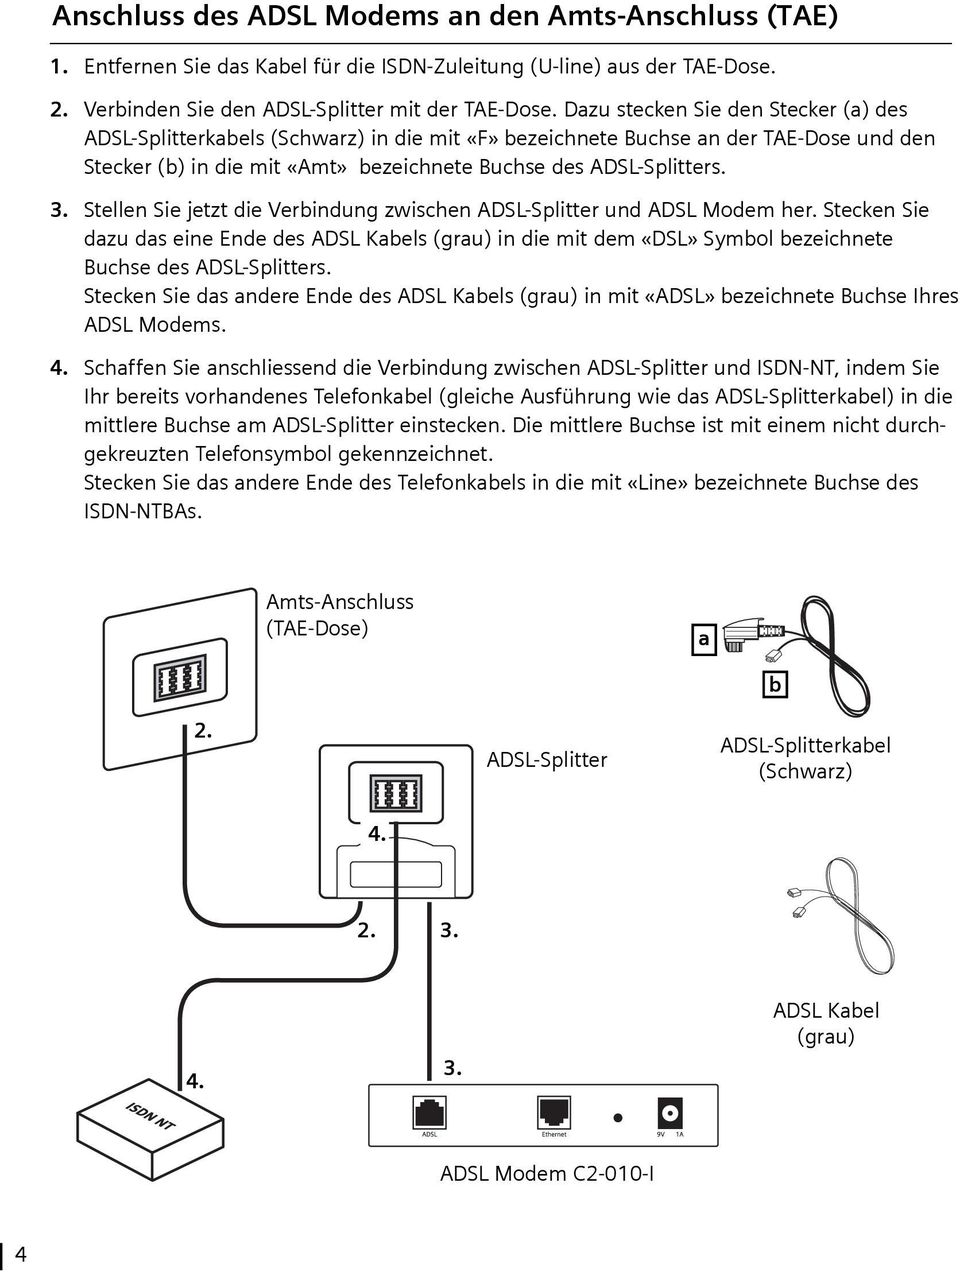 Stellen Sie jetzt die Verbindung zwischen ADSL-Splitter und ADSL Modem her. Stecken Sie dazu das eine Ende des ADSL Kabels (grau) in die mit dem «DSL» Symbol bezeichnete Buchse des ADSL-Splitters.